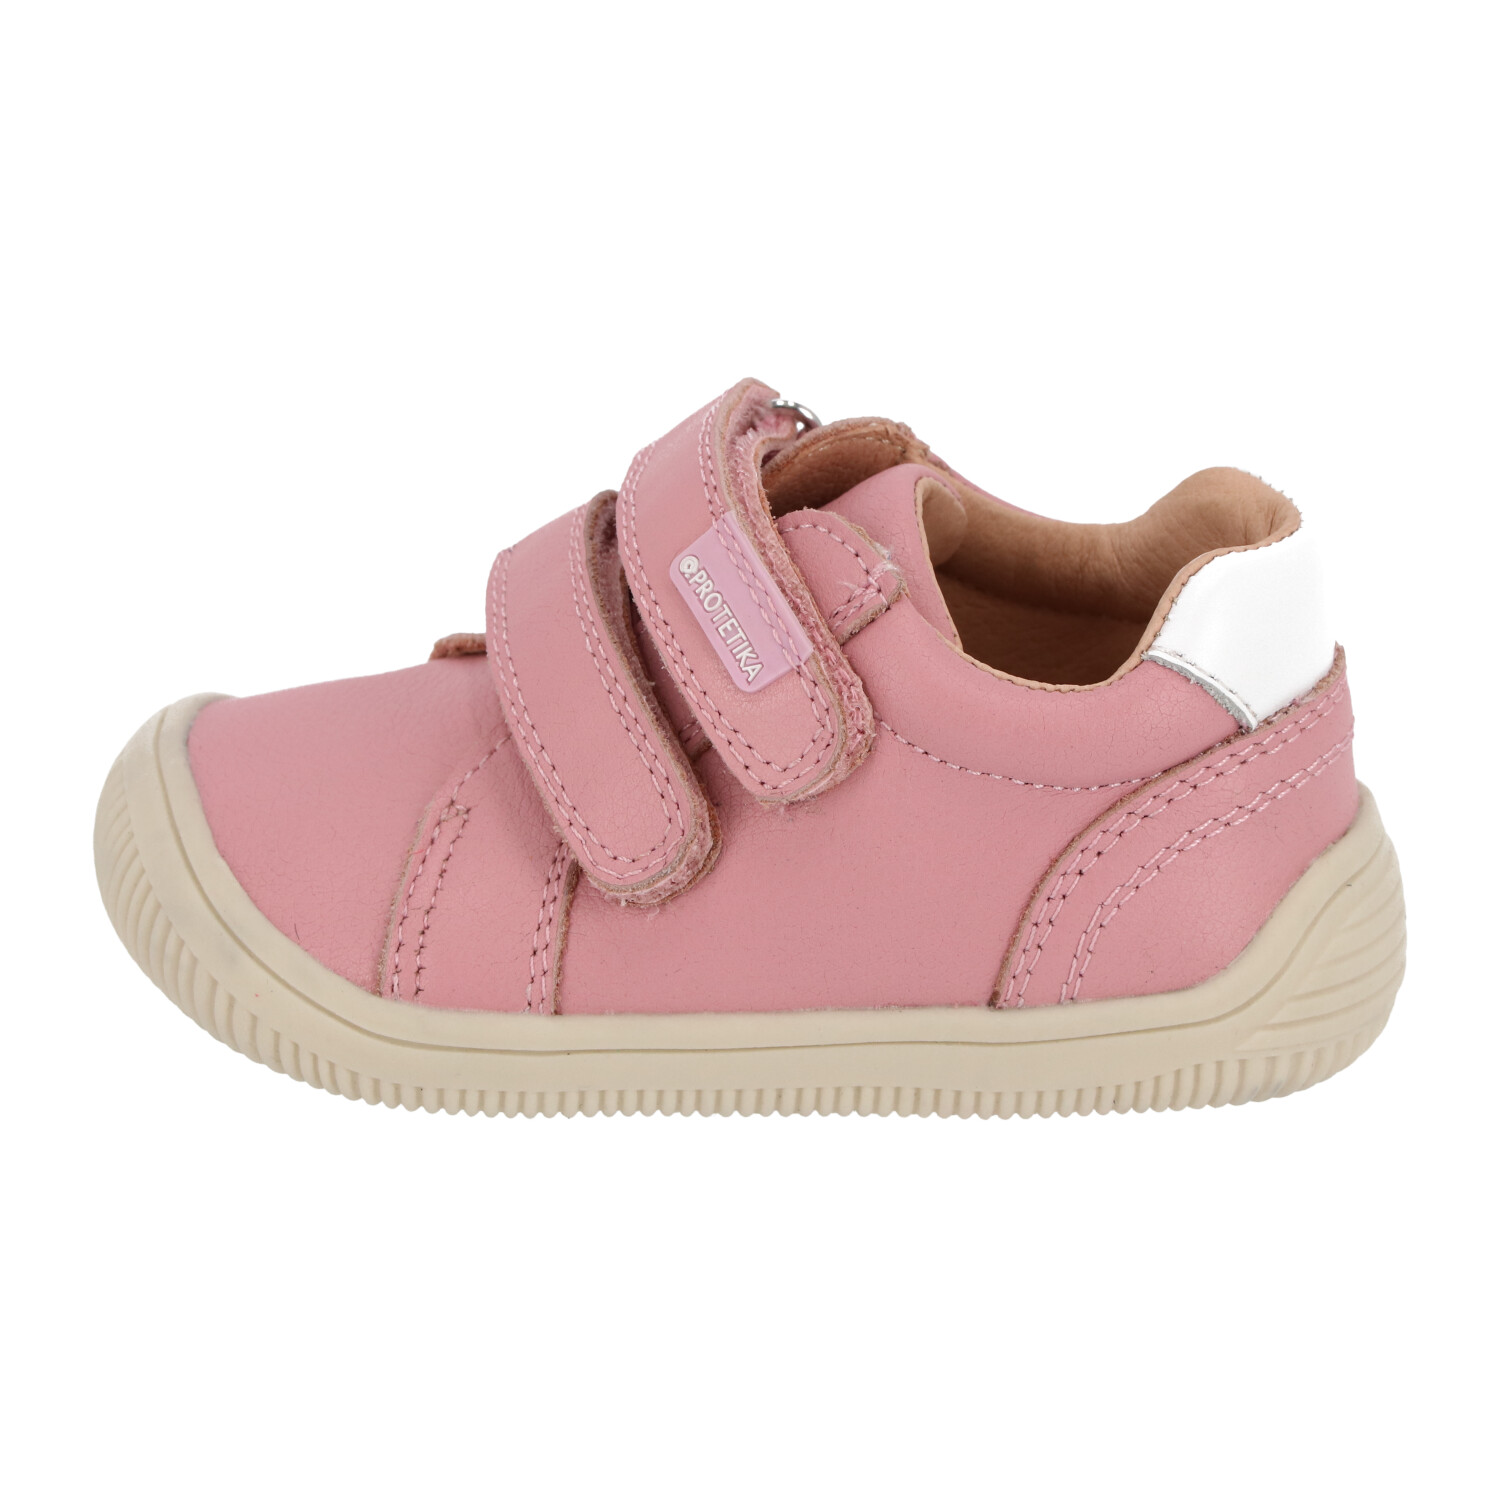 Protetika - barefootové topánky LAUREN pink